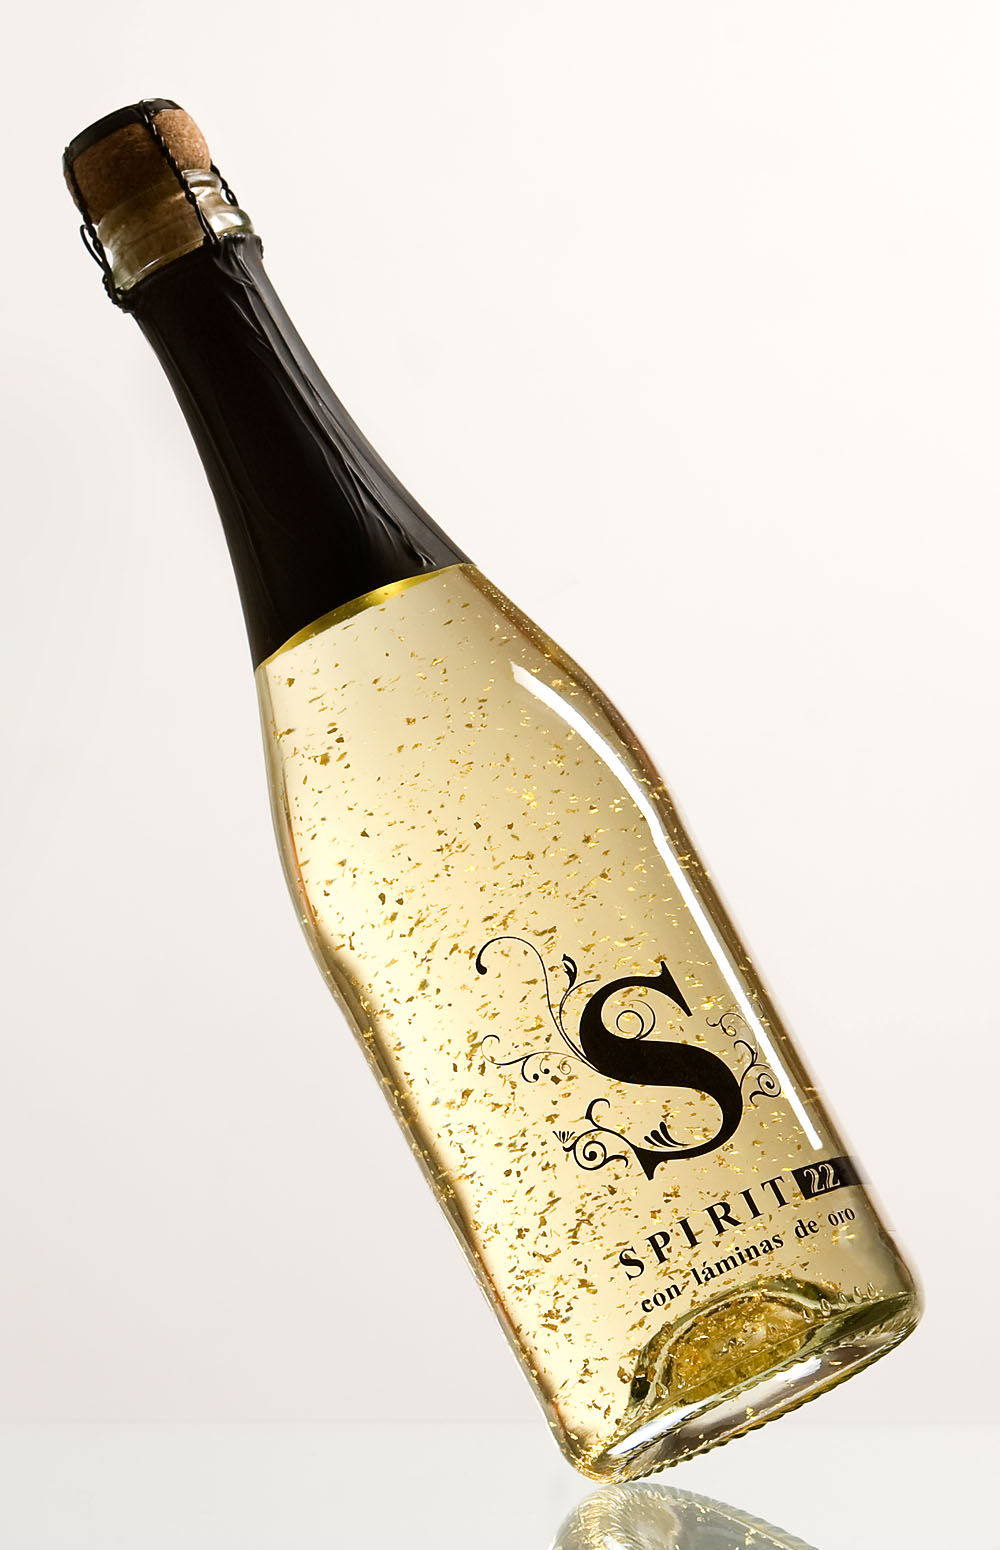 spirit 22 con laminas de oro, bebida aromatizada a base de vino espumoso on oro